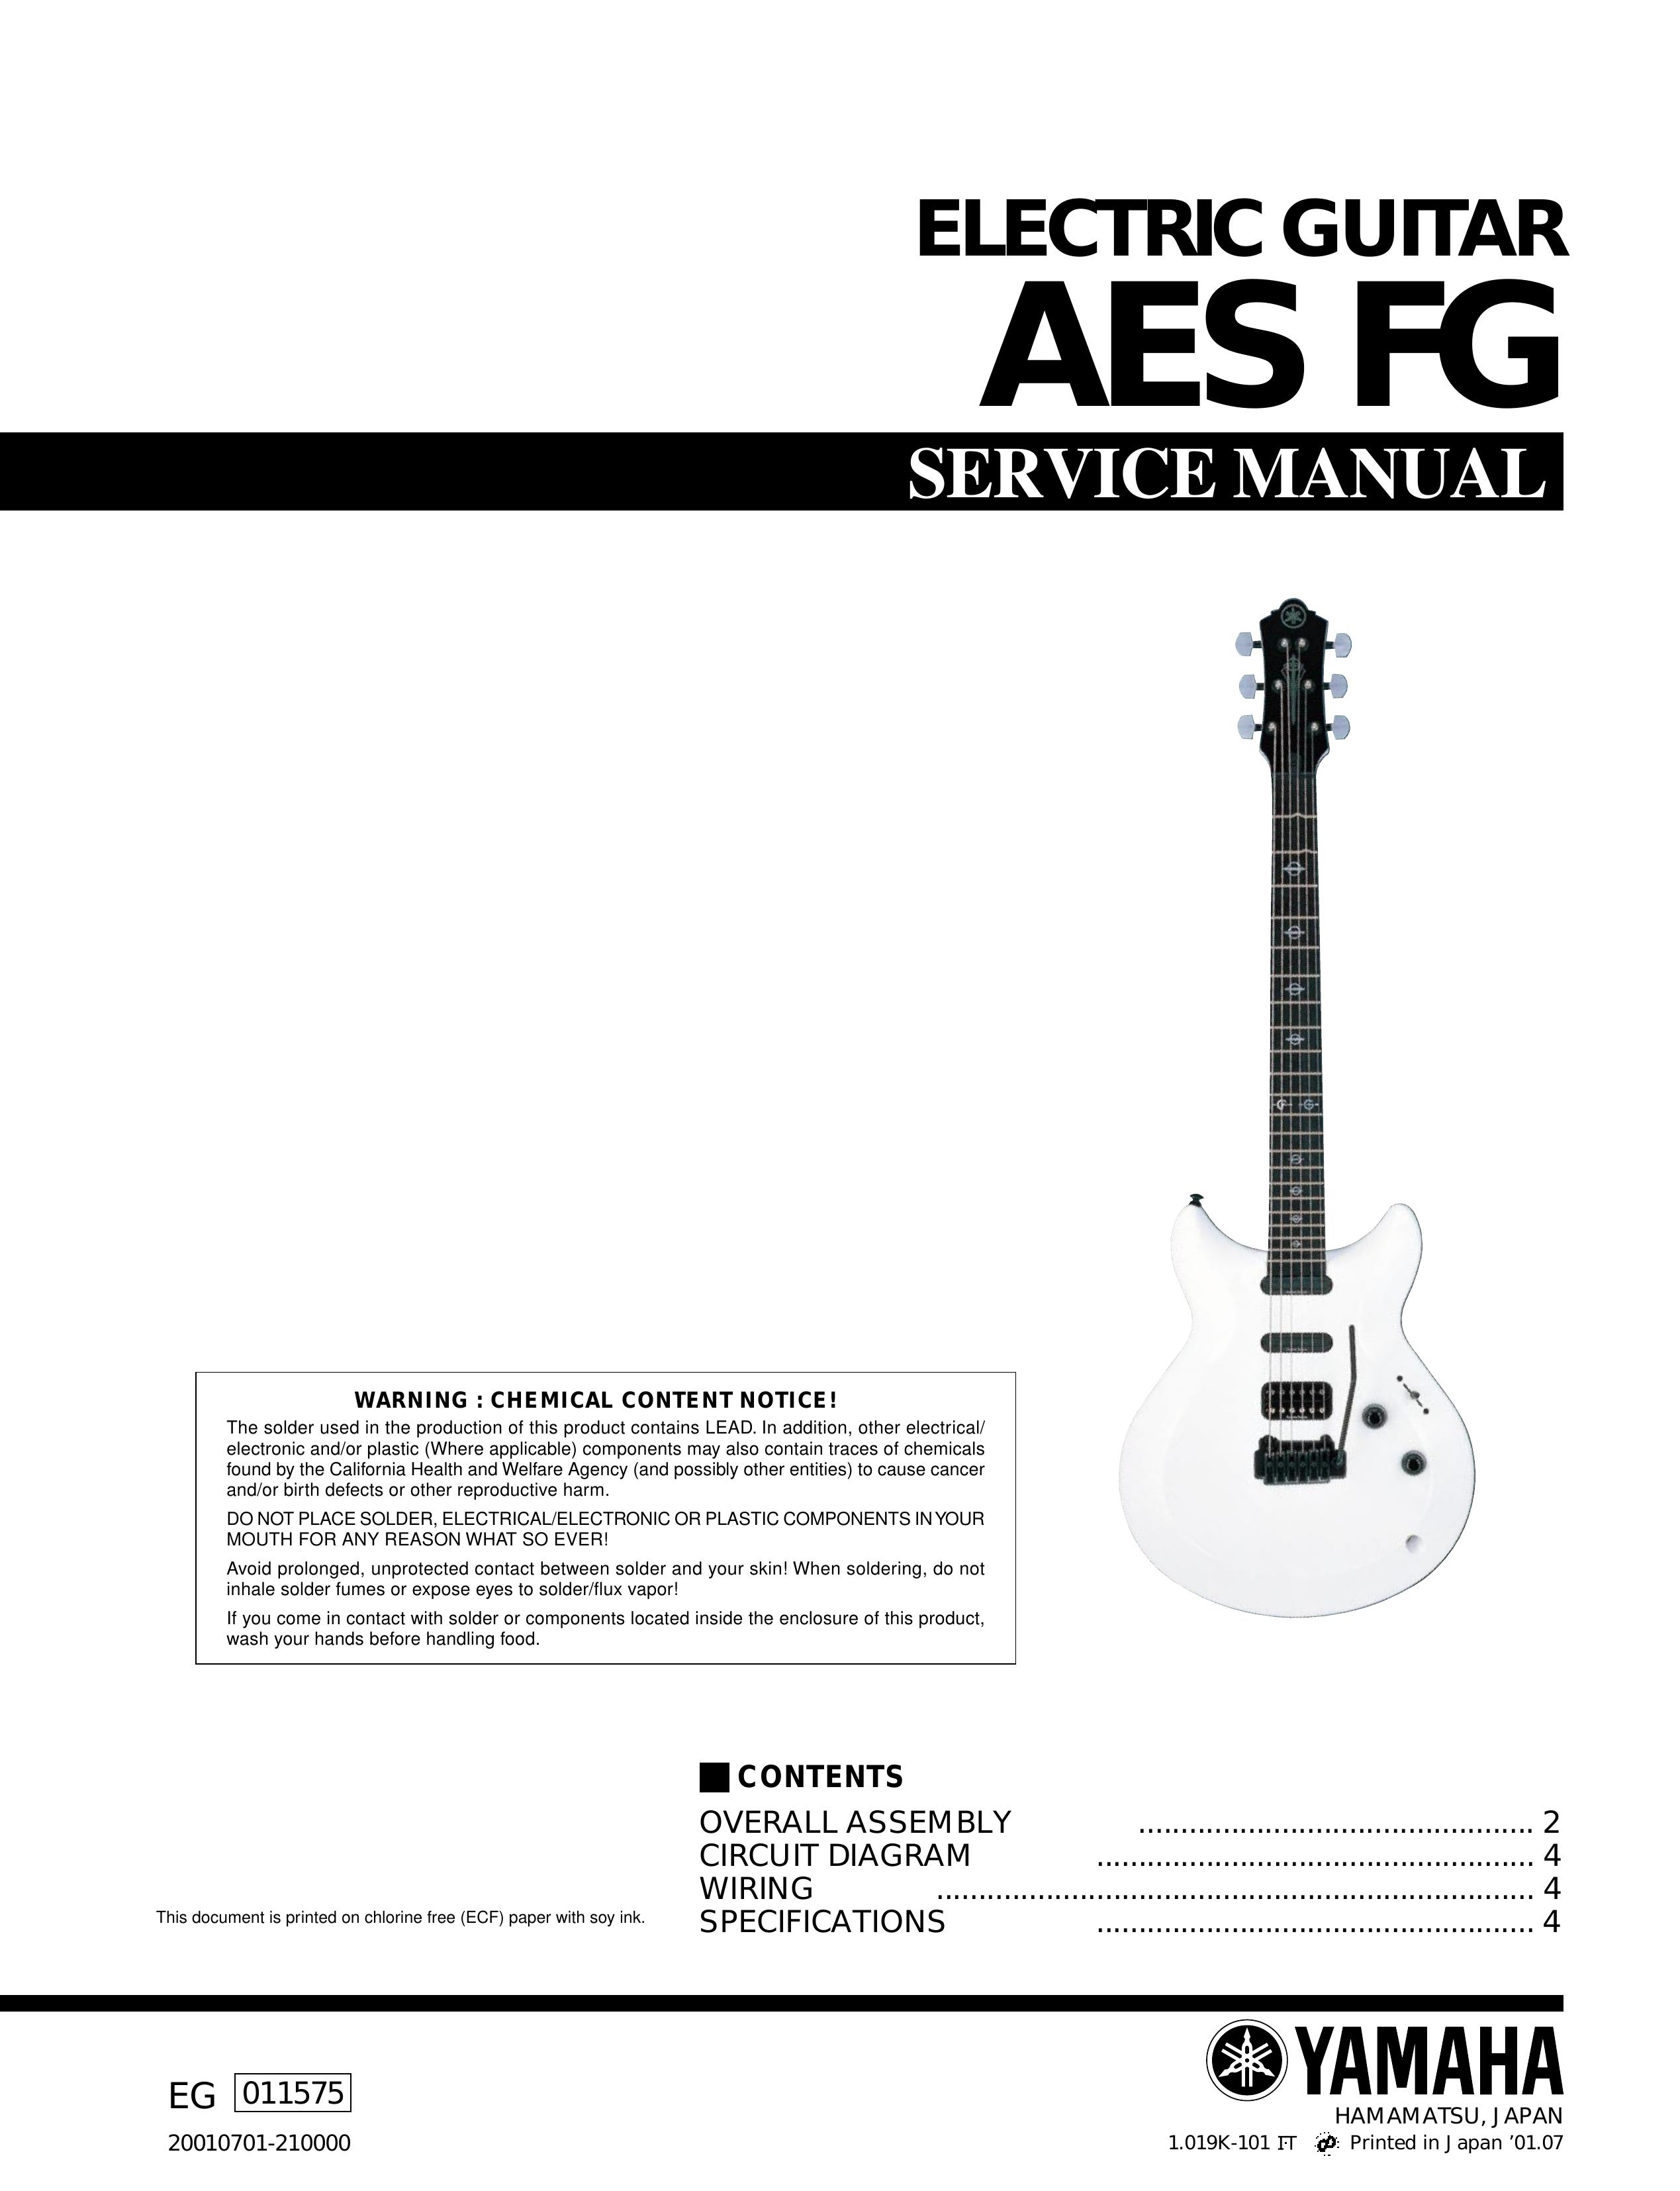 Yamaha Electric Guitar AES FG Guitar User Manual